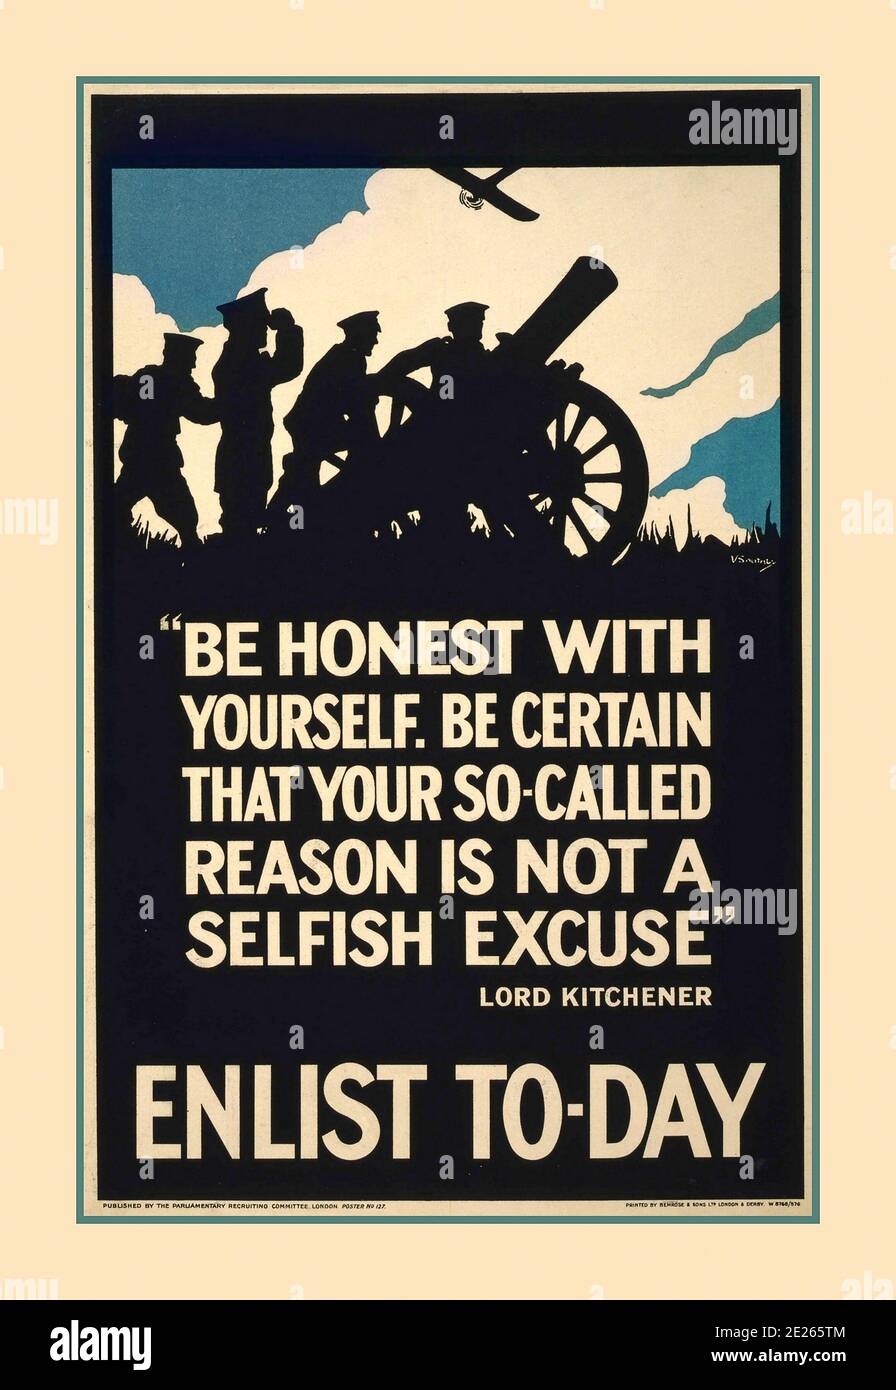 ENRÔLER AUJOURD'HUI WW1 1915 Vintage UK recrutement propagande WW1 affiche britannique ' soyez honnête avec vous-même. Assurez-vous que votre soi-disant raison n'est pas une excuse égoïste. Lord Kitchener. Enrôler au jour le jour 1914 la première Guerre mondiale affiche de recrutement de propagande d'époque de Lord Kitchener S'ENRÔLER AUJOURD'HUI Banque D'Images